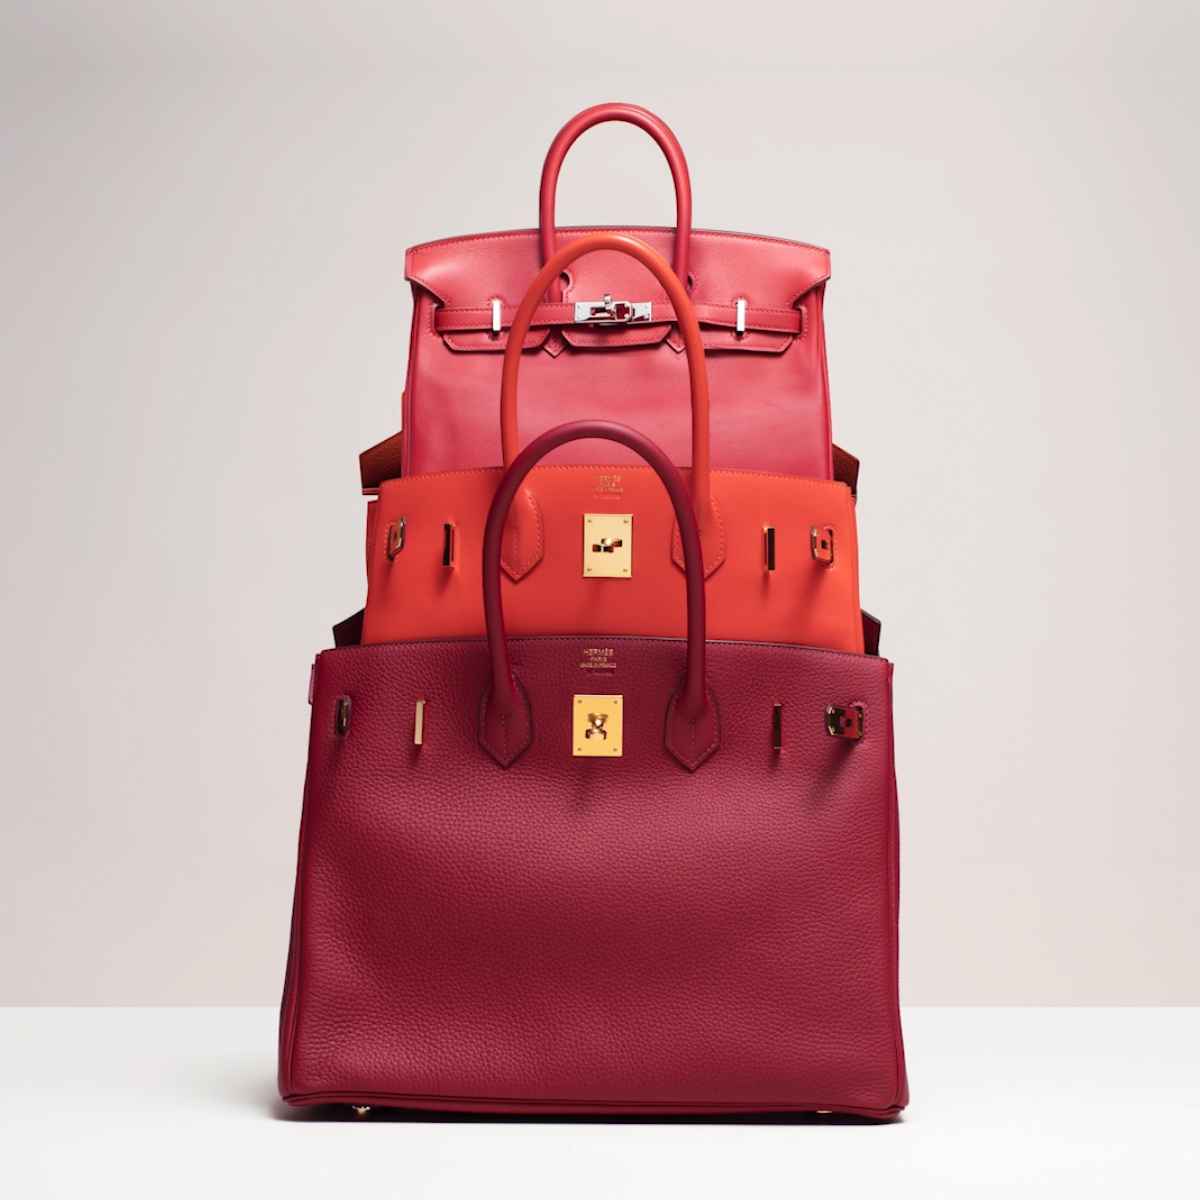 10 Most Popular Designer Bag Brands To Own